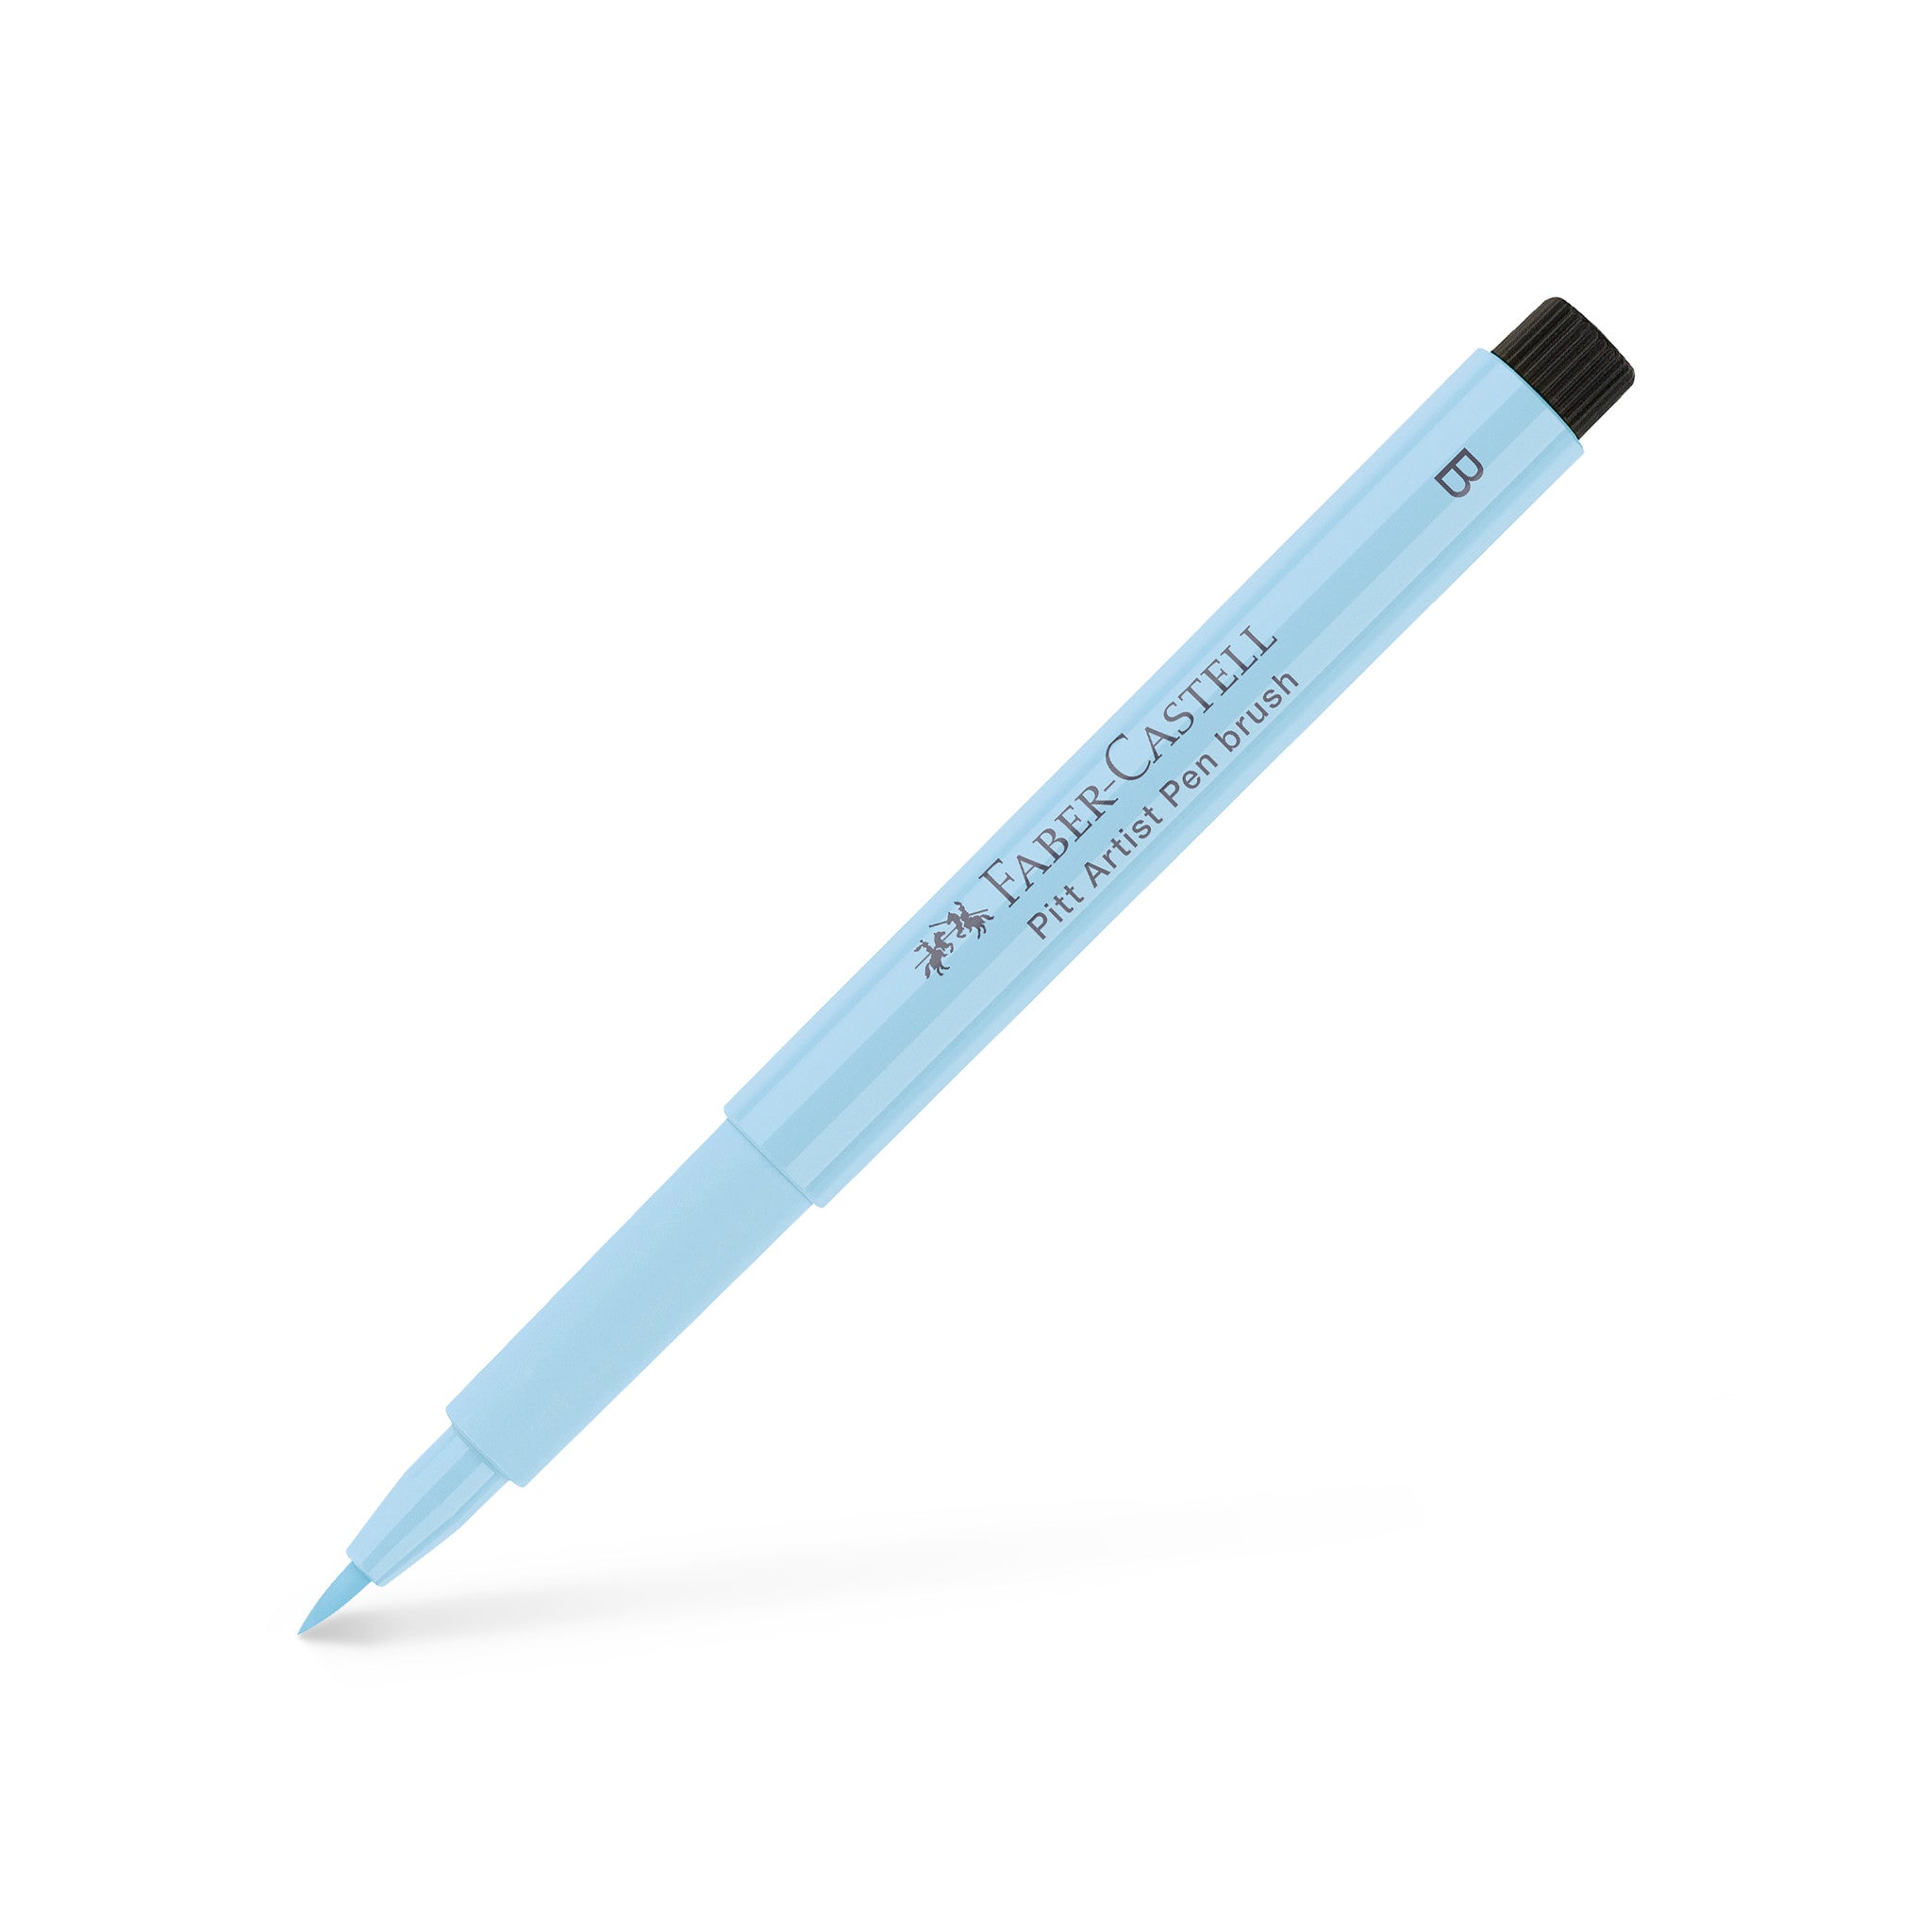 PITT Artist Brush Pens – ARCH Art Supplies